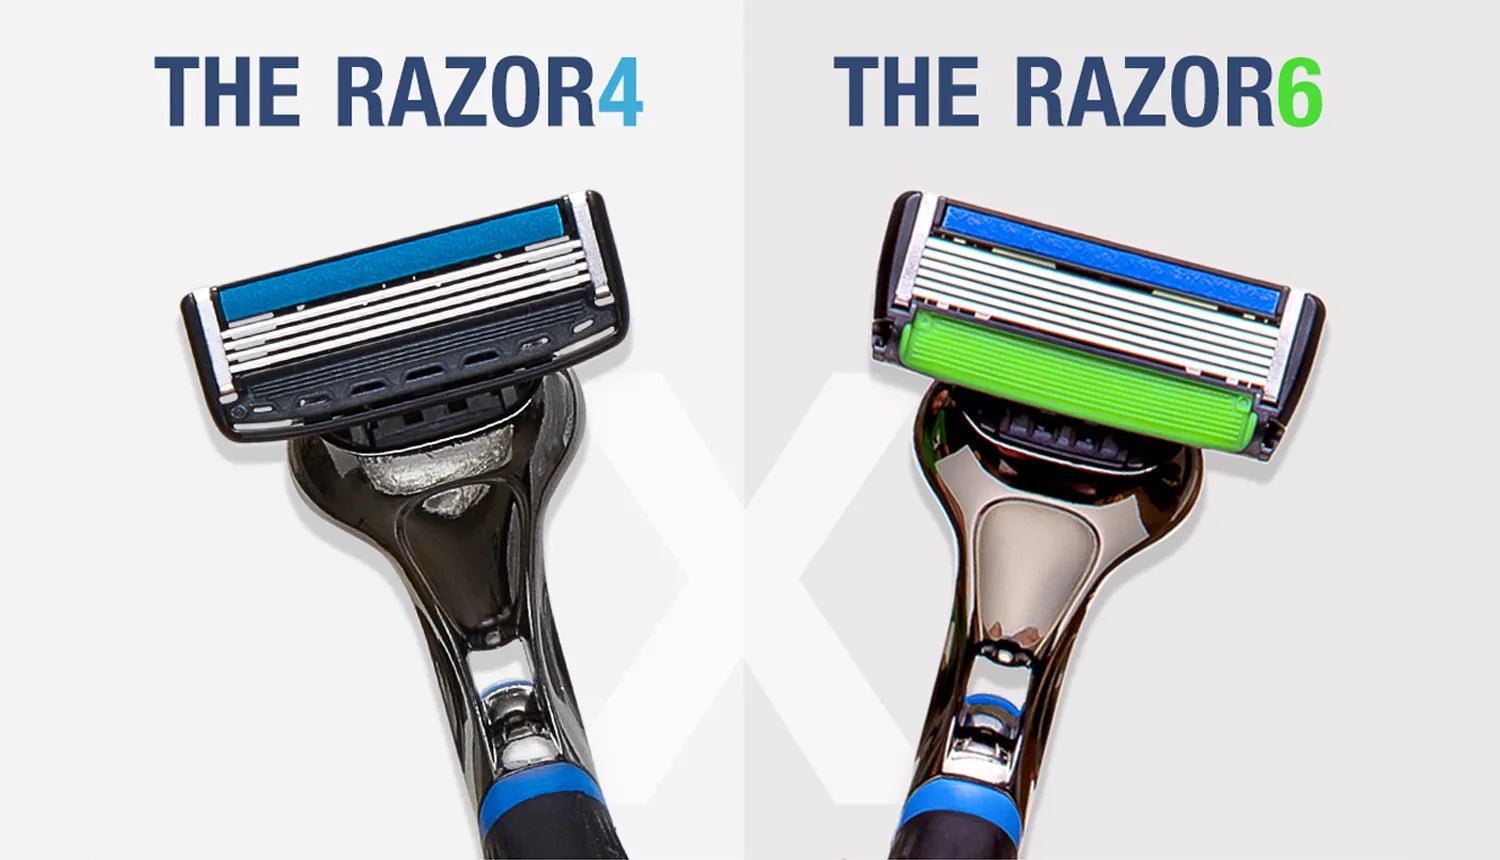 The Razor 4 ou 6 lâminas: qual o melhor para você? - Dr. JONES. Imagem mostra The Razor4 ao lado de The Razor6, da Dr. JONES, em fundo cinza, em que se lê os nomes dos barbeadores e um "X", sugerindo uma competição.